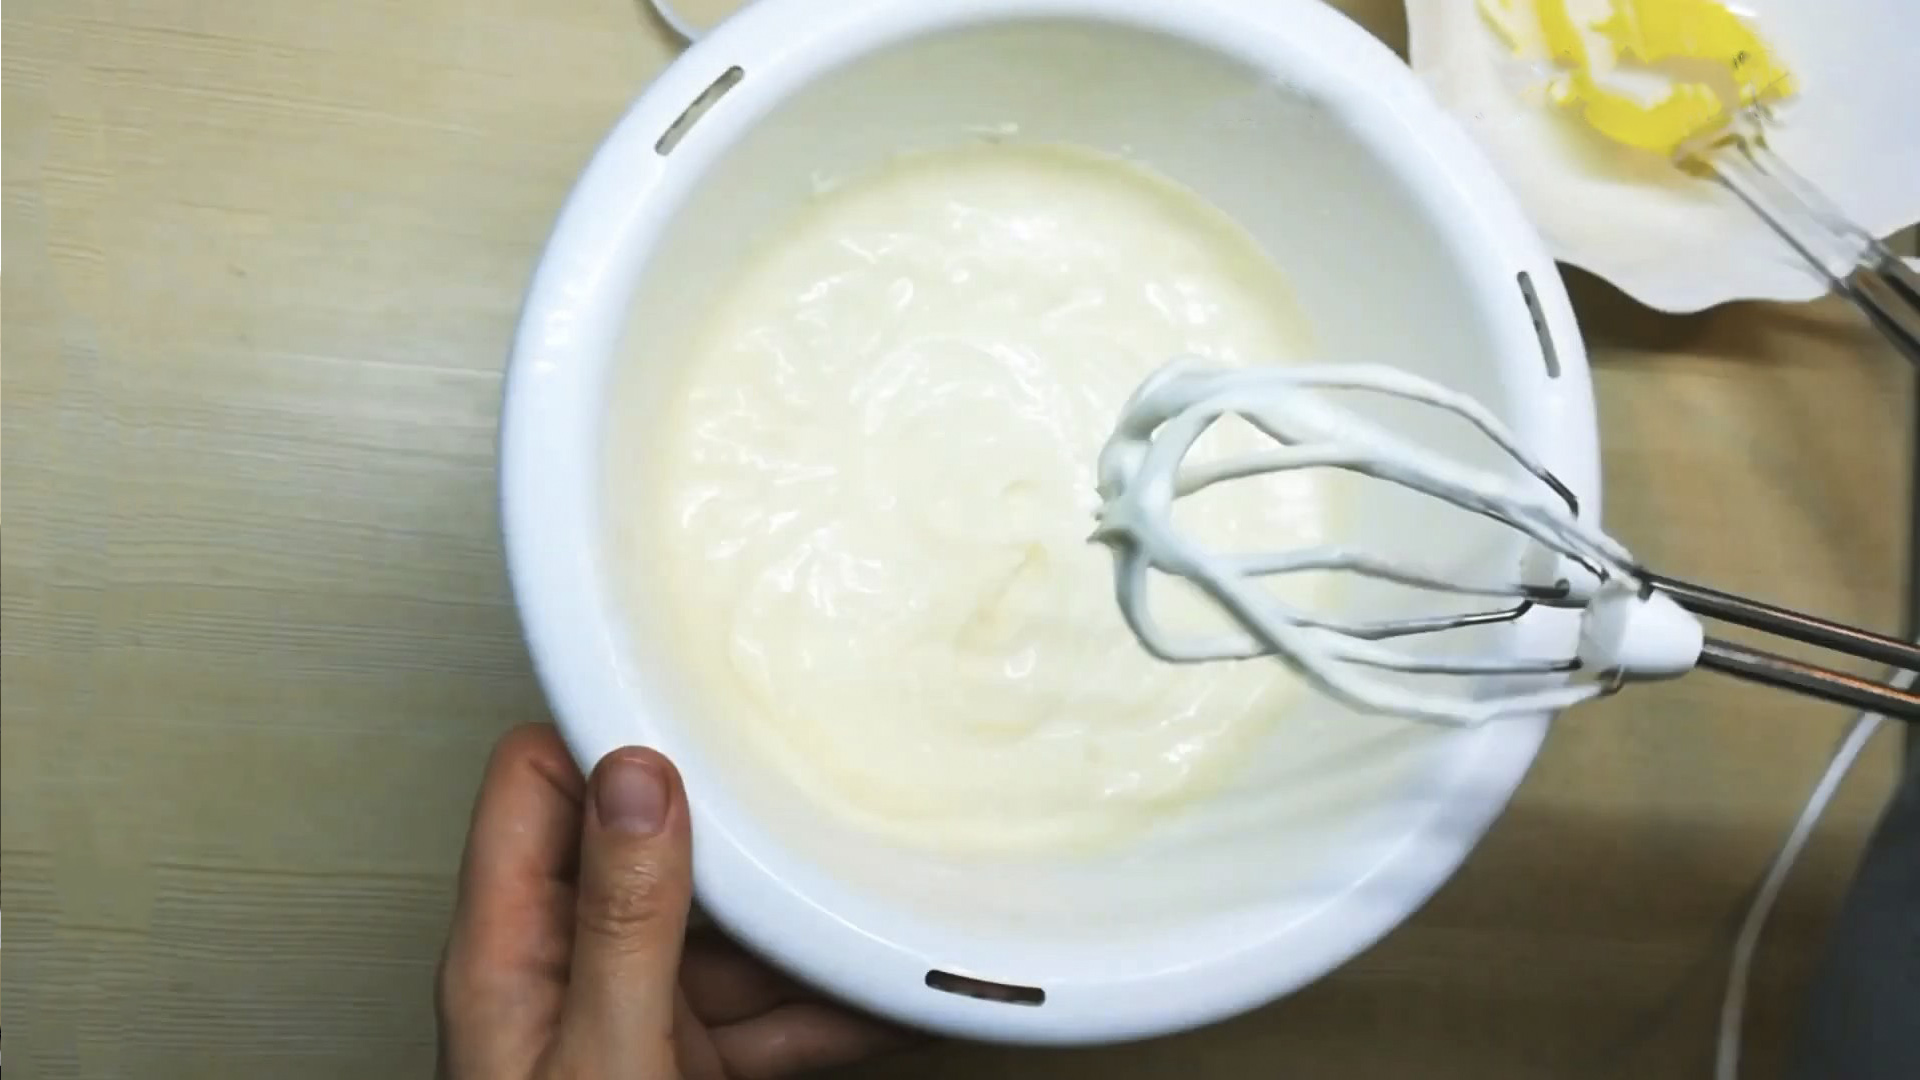 Рецепт - Сметанный крем с маслом - шаг 5.1